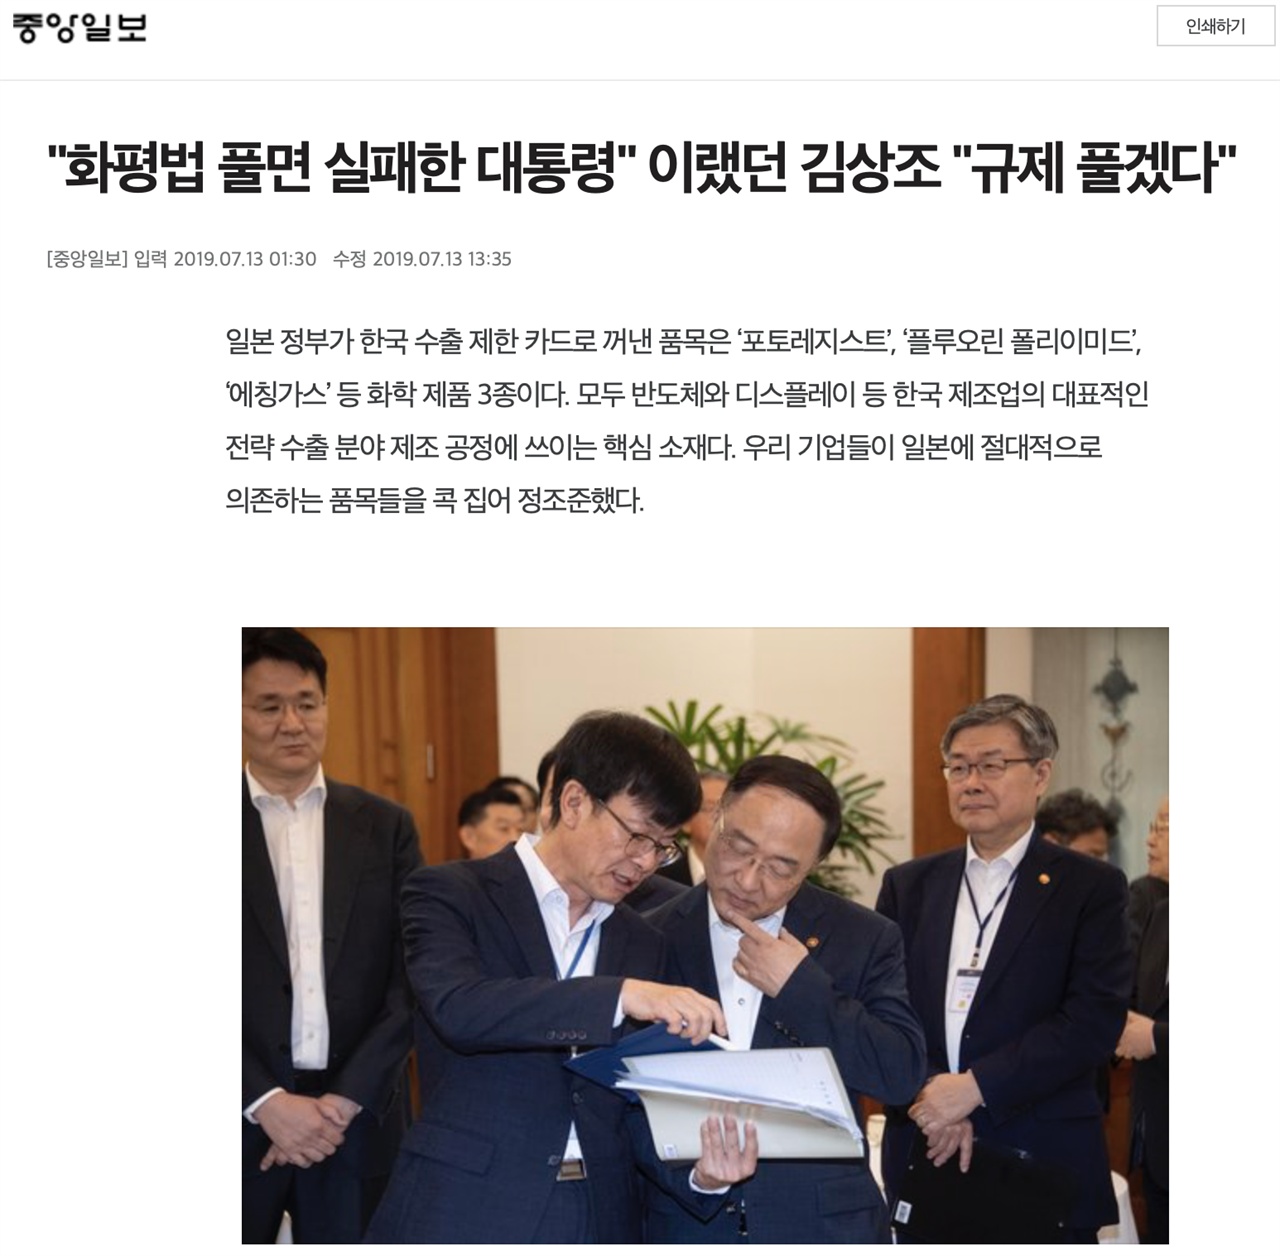 13일자 <중앙일보> 기사